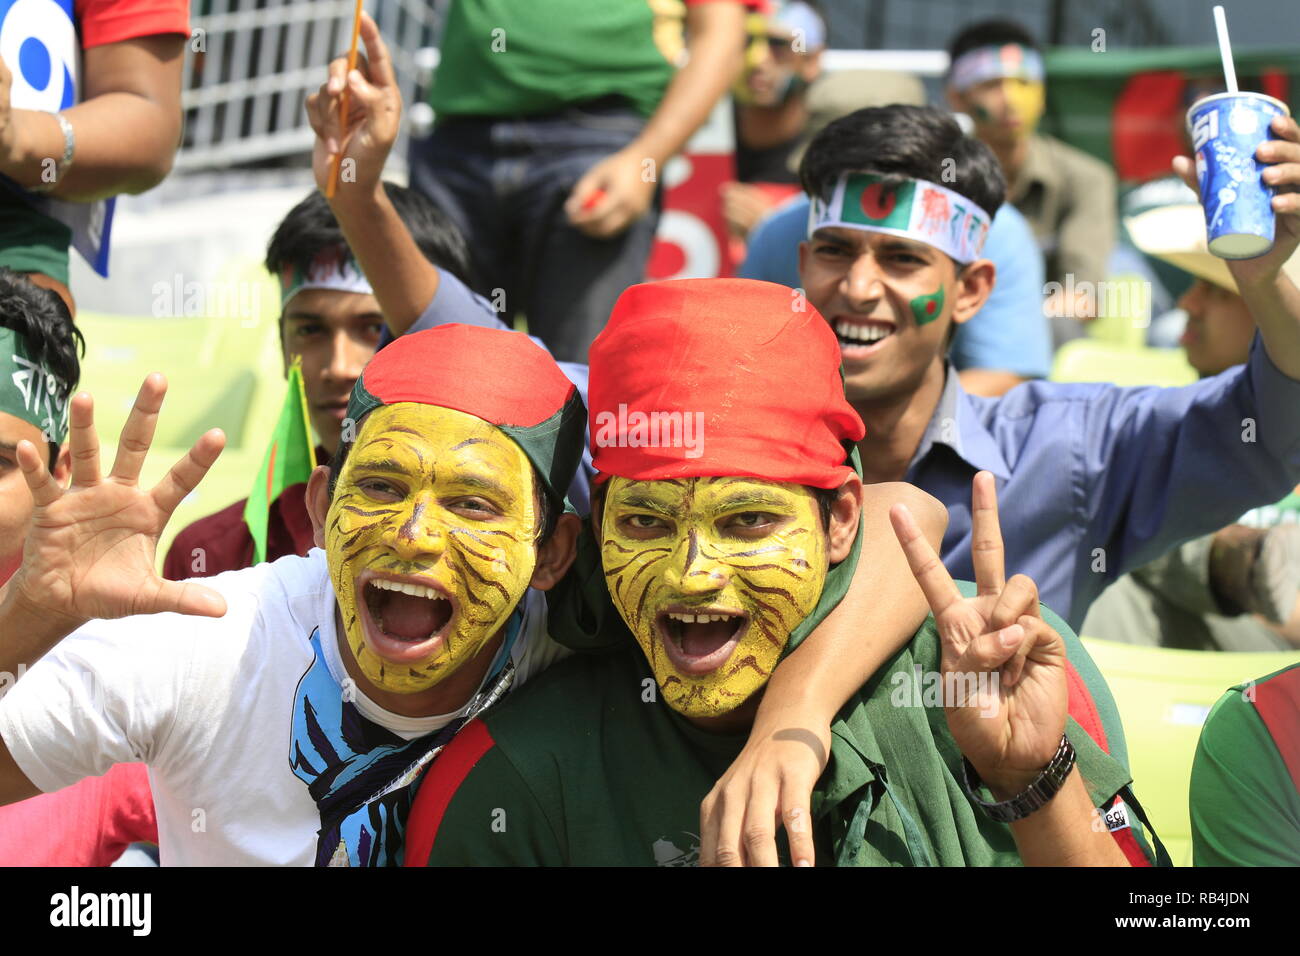 Le Bangladesh fans flash le V-sign au cours de l'ICC Cricket World Cup 2011 contre West Indies à la Sher-e-bangla National Stadium. Dhaka, Bangladesh. Banque D'Images